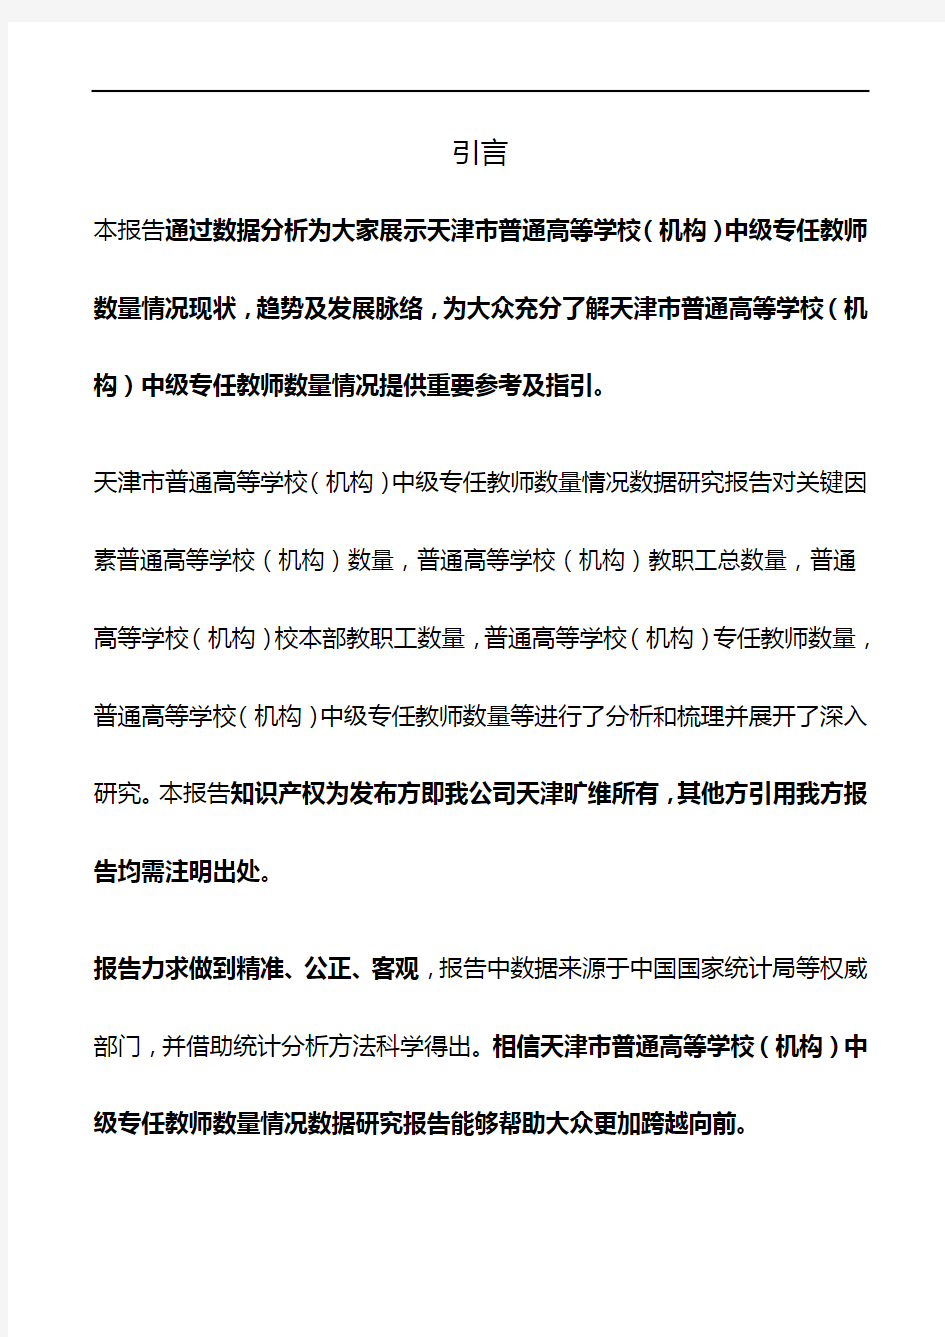 天津市普通高等学校(机构)中级专任教师数量情况3年数据研究报告2019版